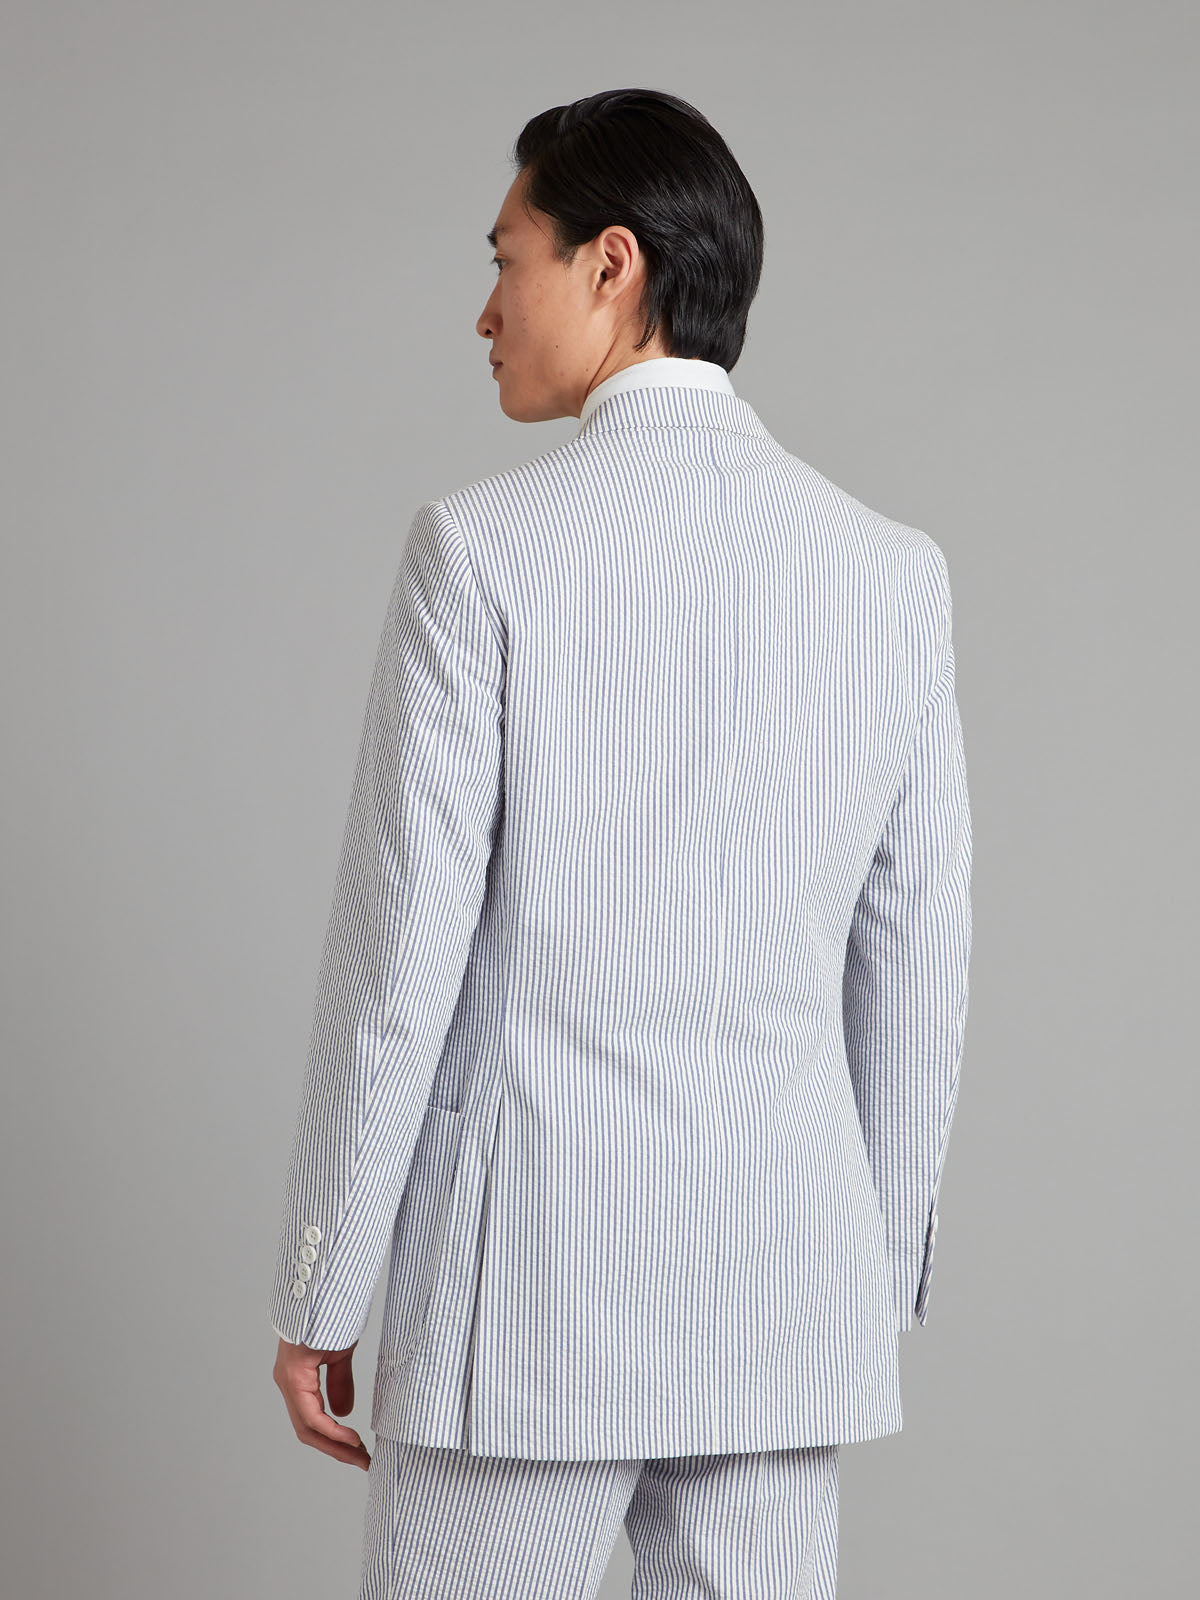 Unstructured Seersucker Suit - Navy/White Stripe